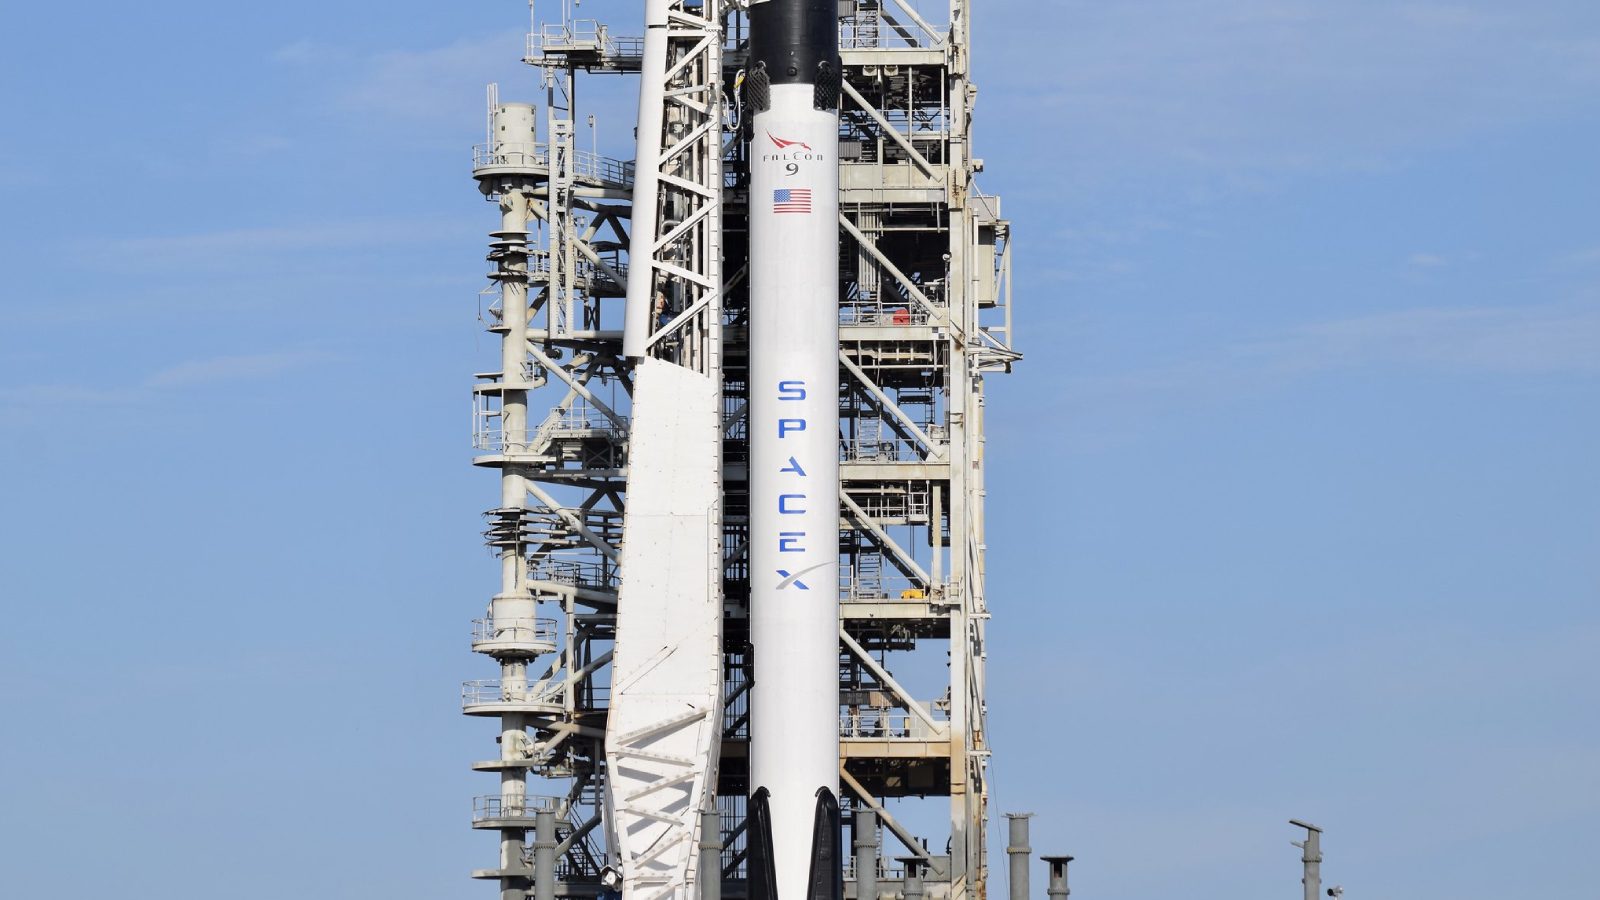 Миссия Транспортера-7 Falcon 9 отложена из-за неблагоприятных погодных условий